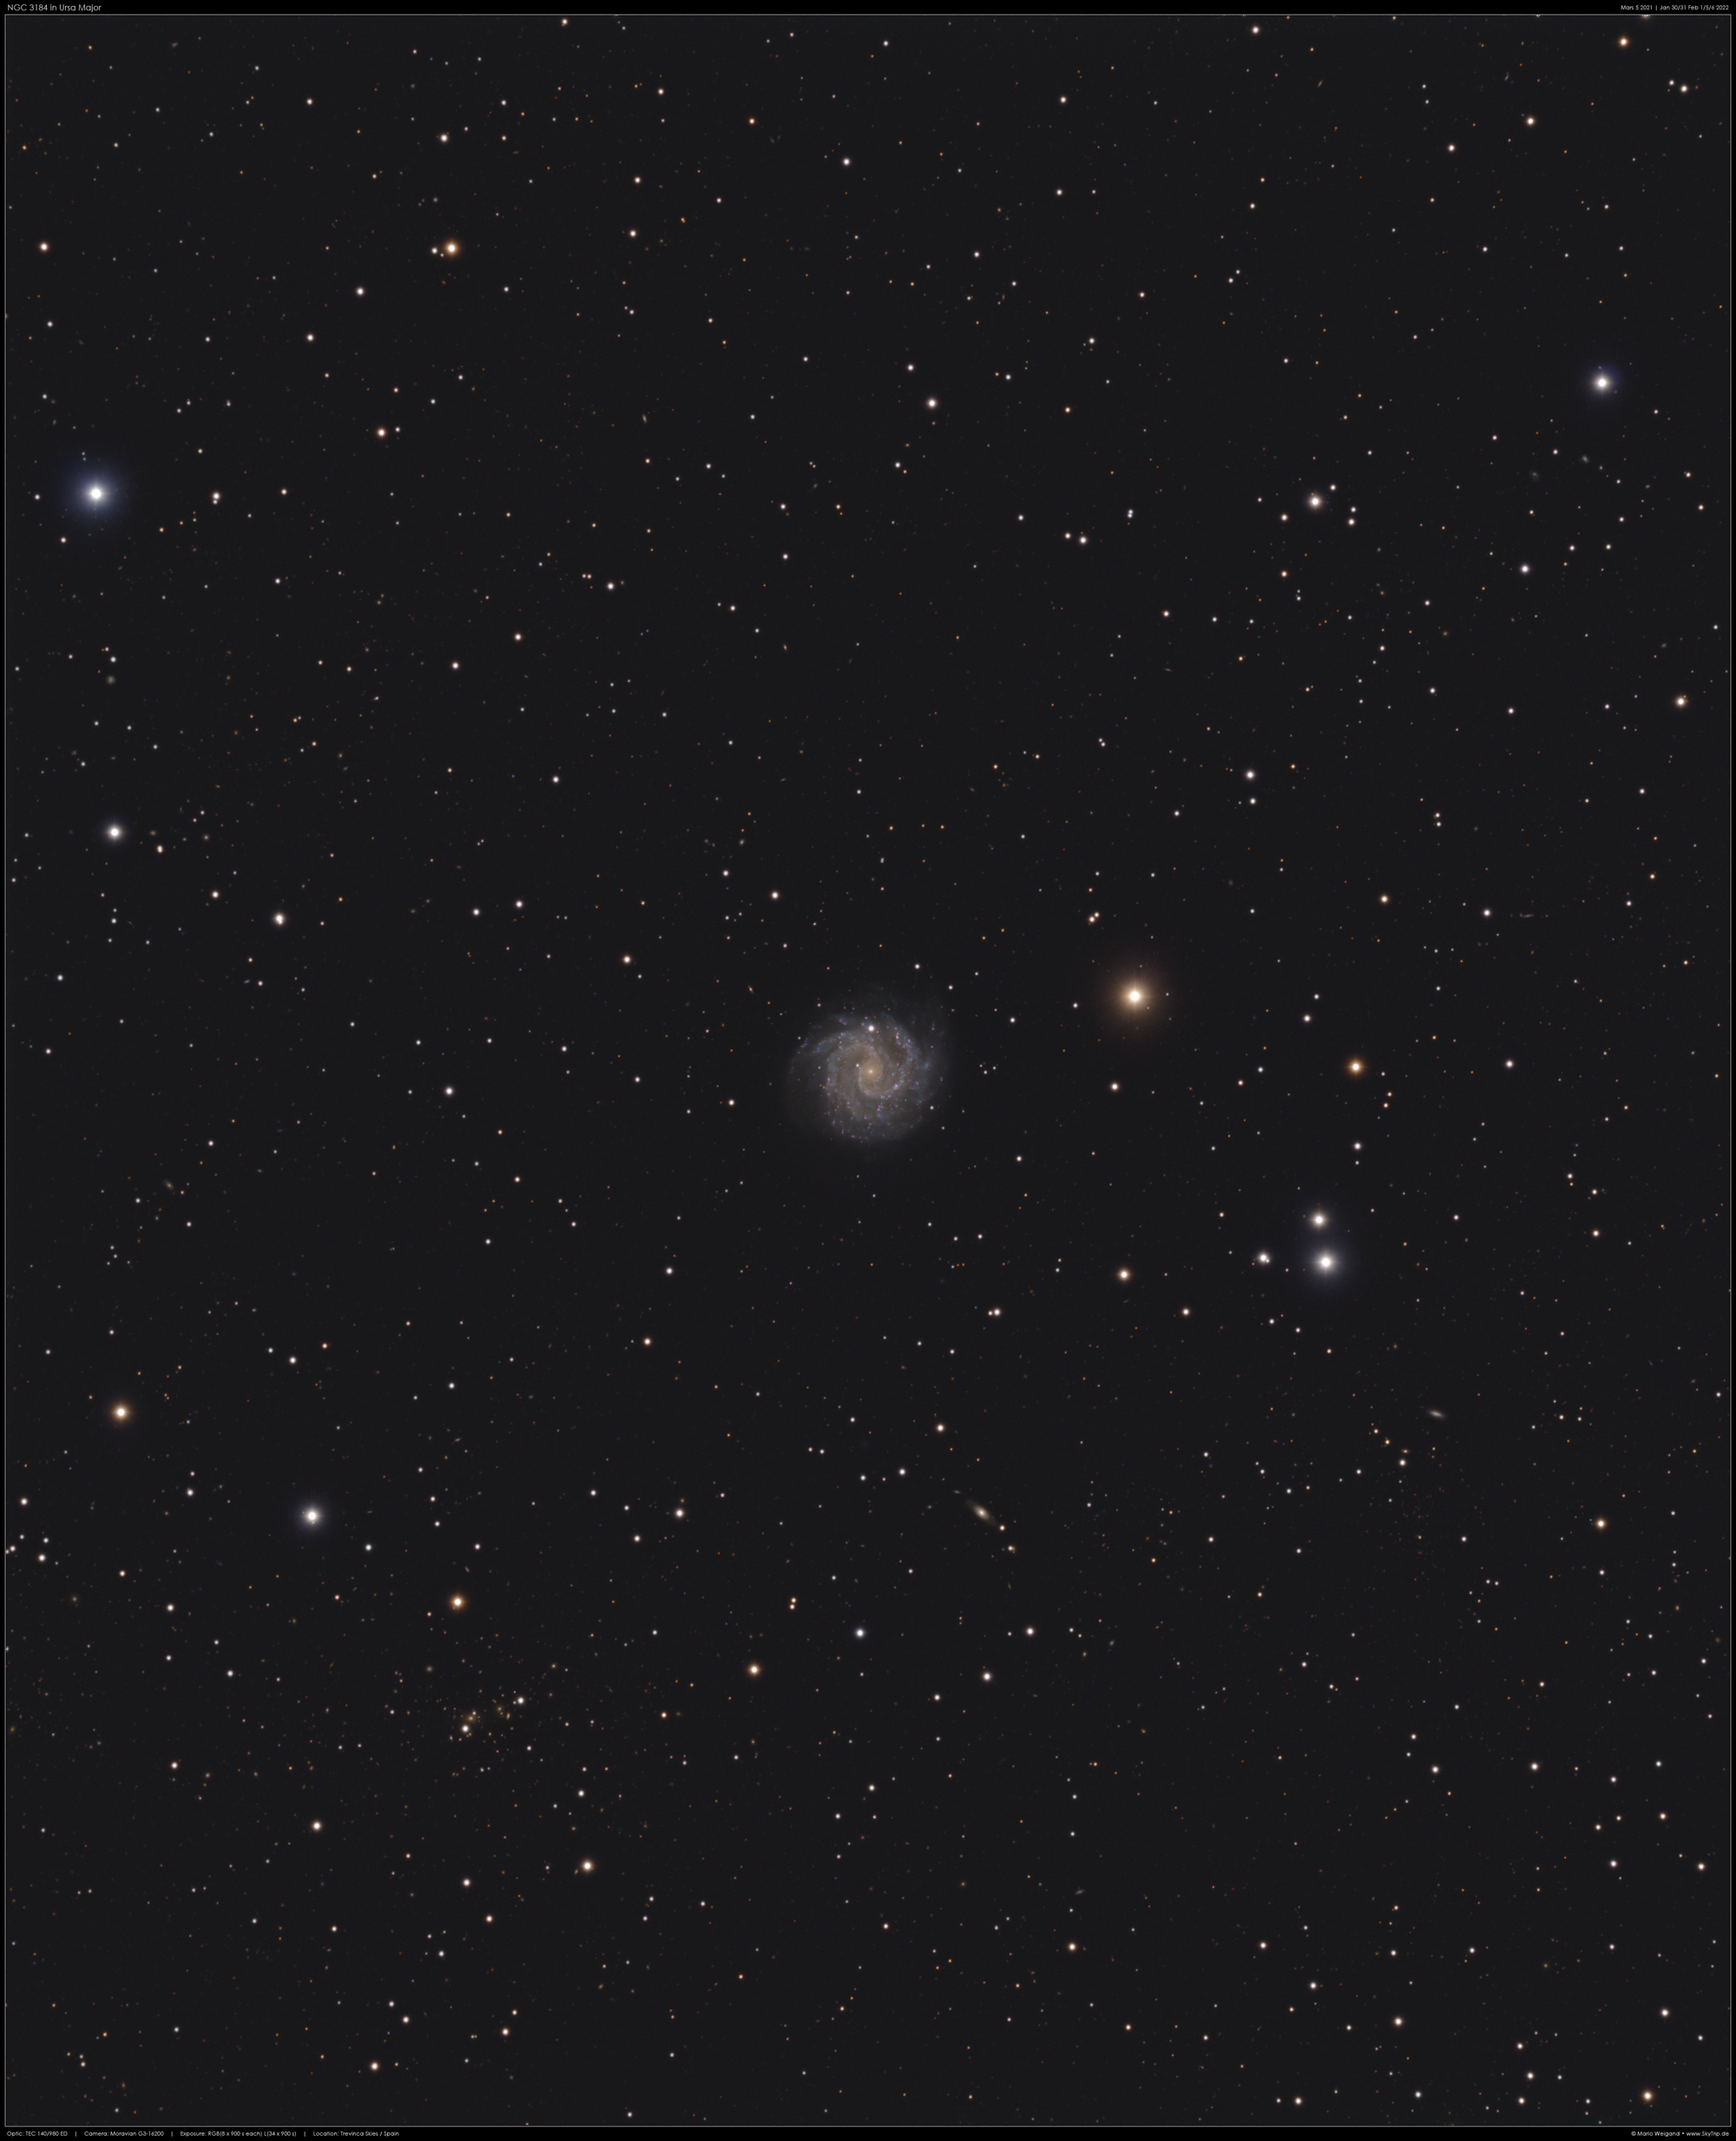 Balkenspirale NGC 3184 in Ursa Major